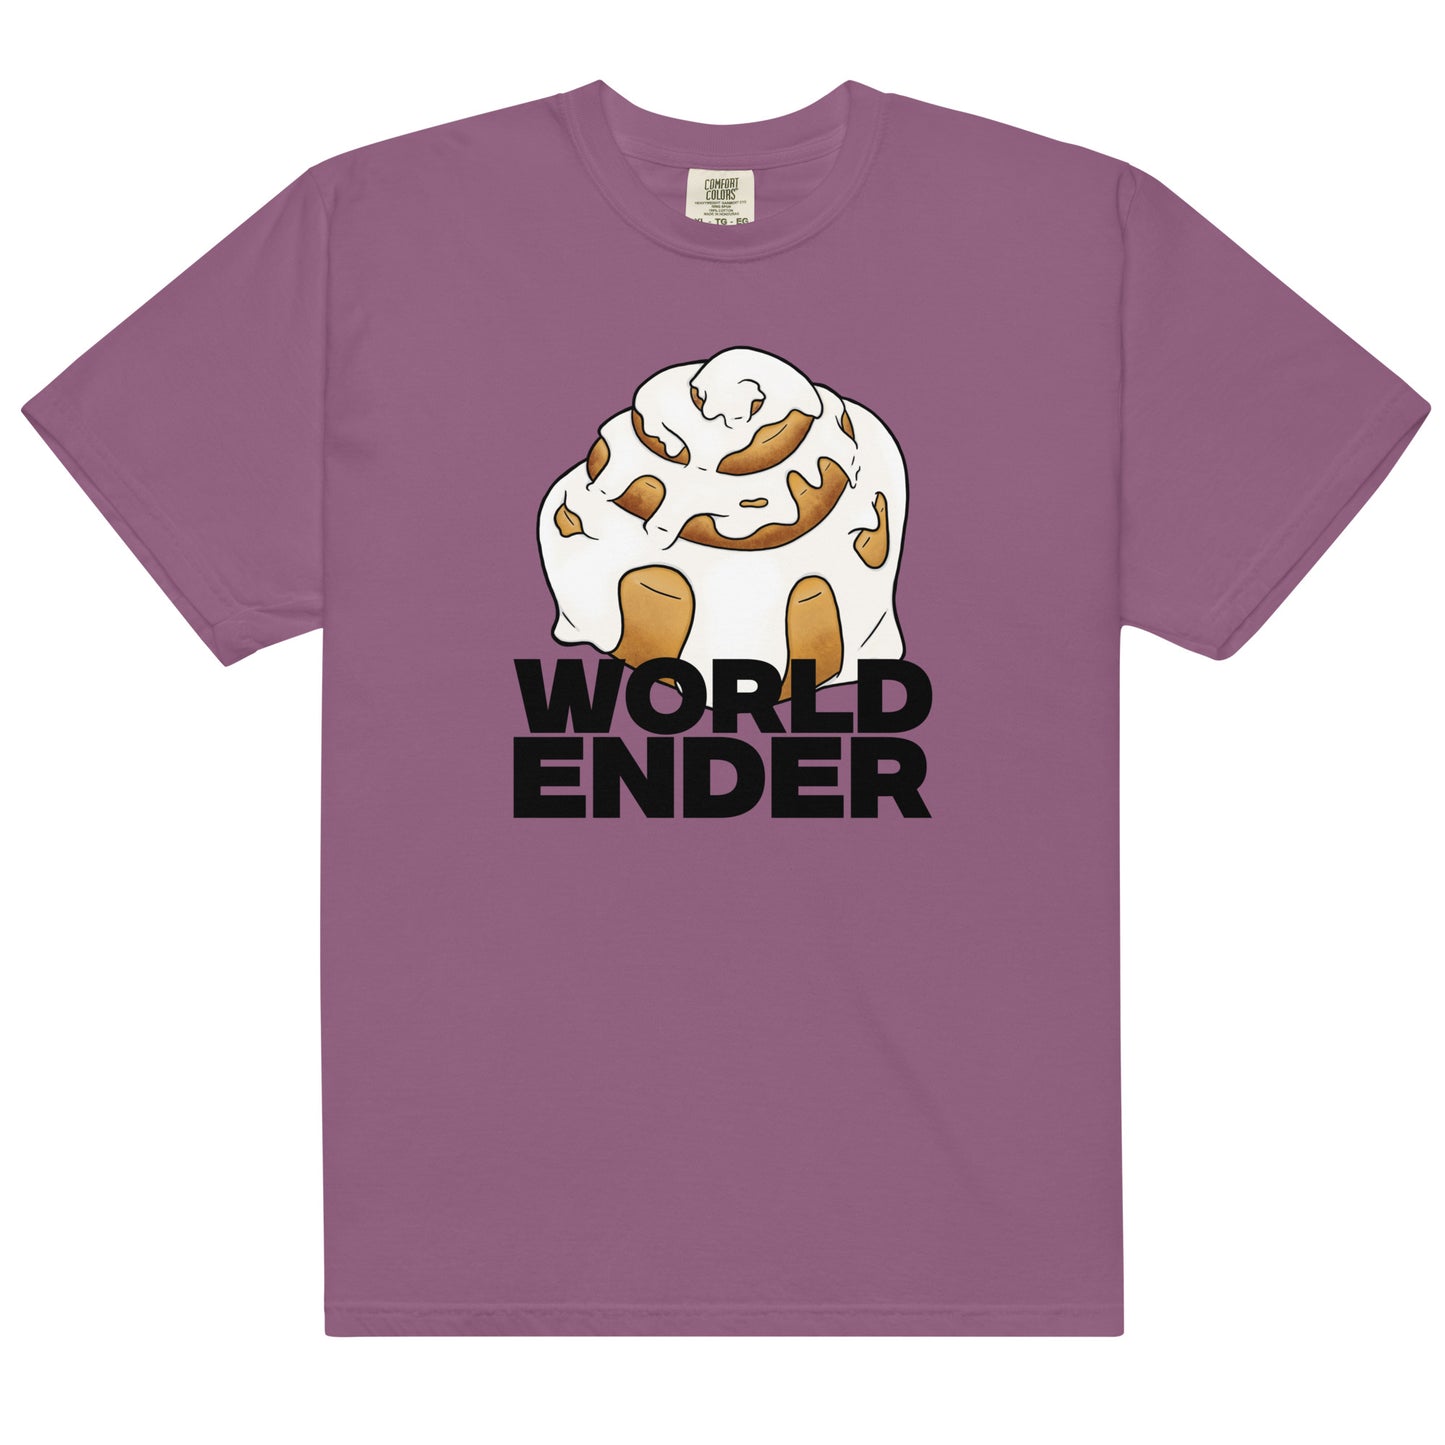 World Ender heavyweight t-shirt